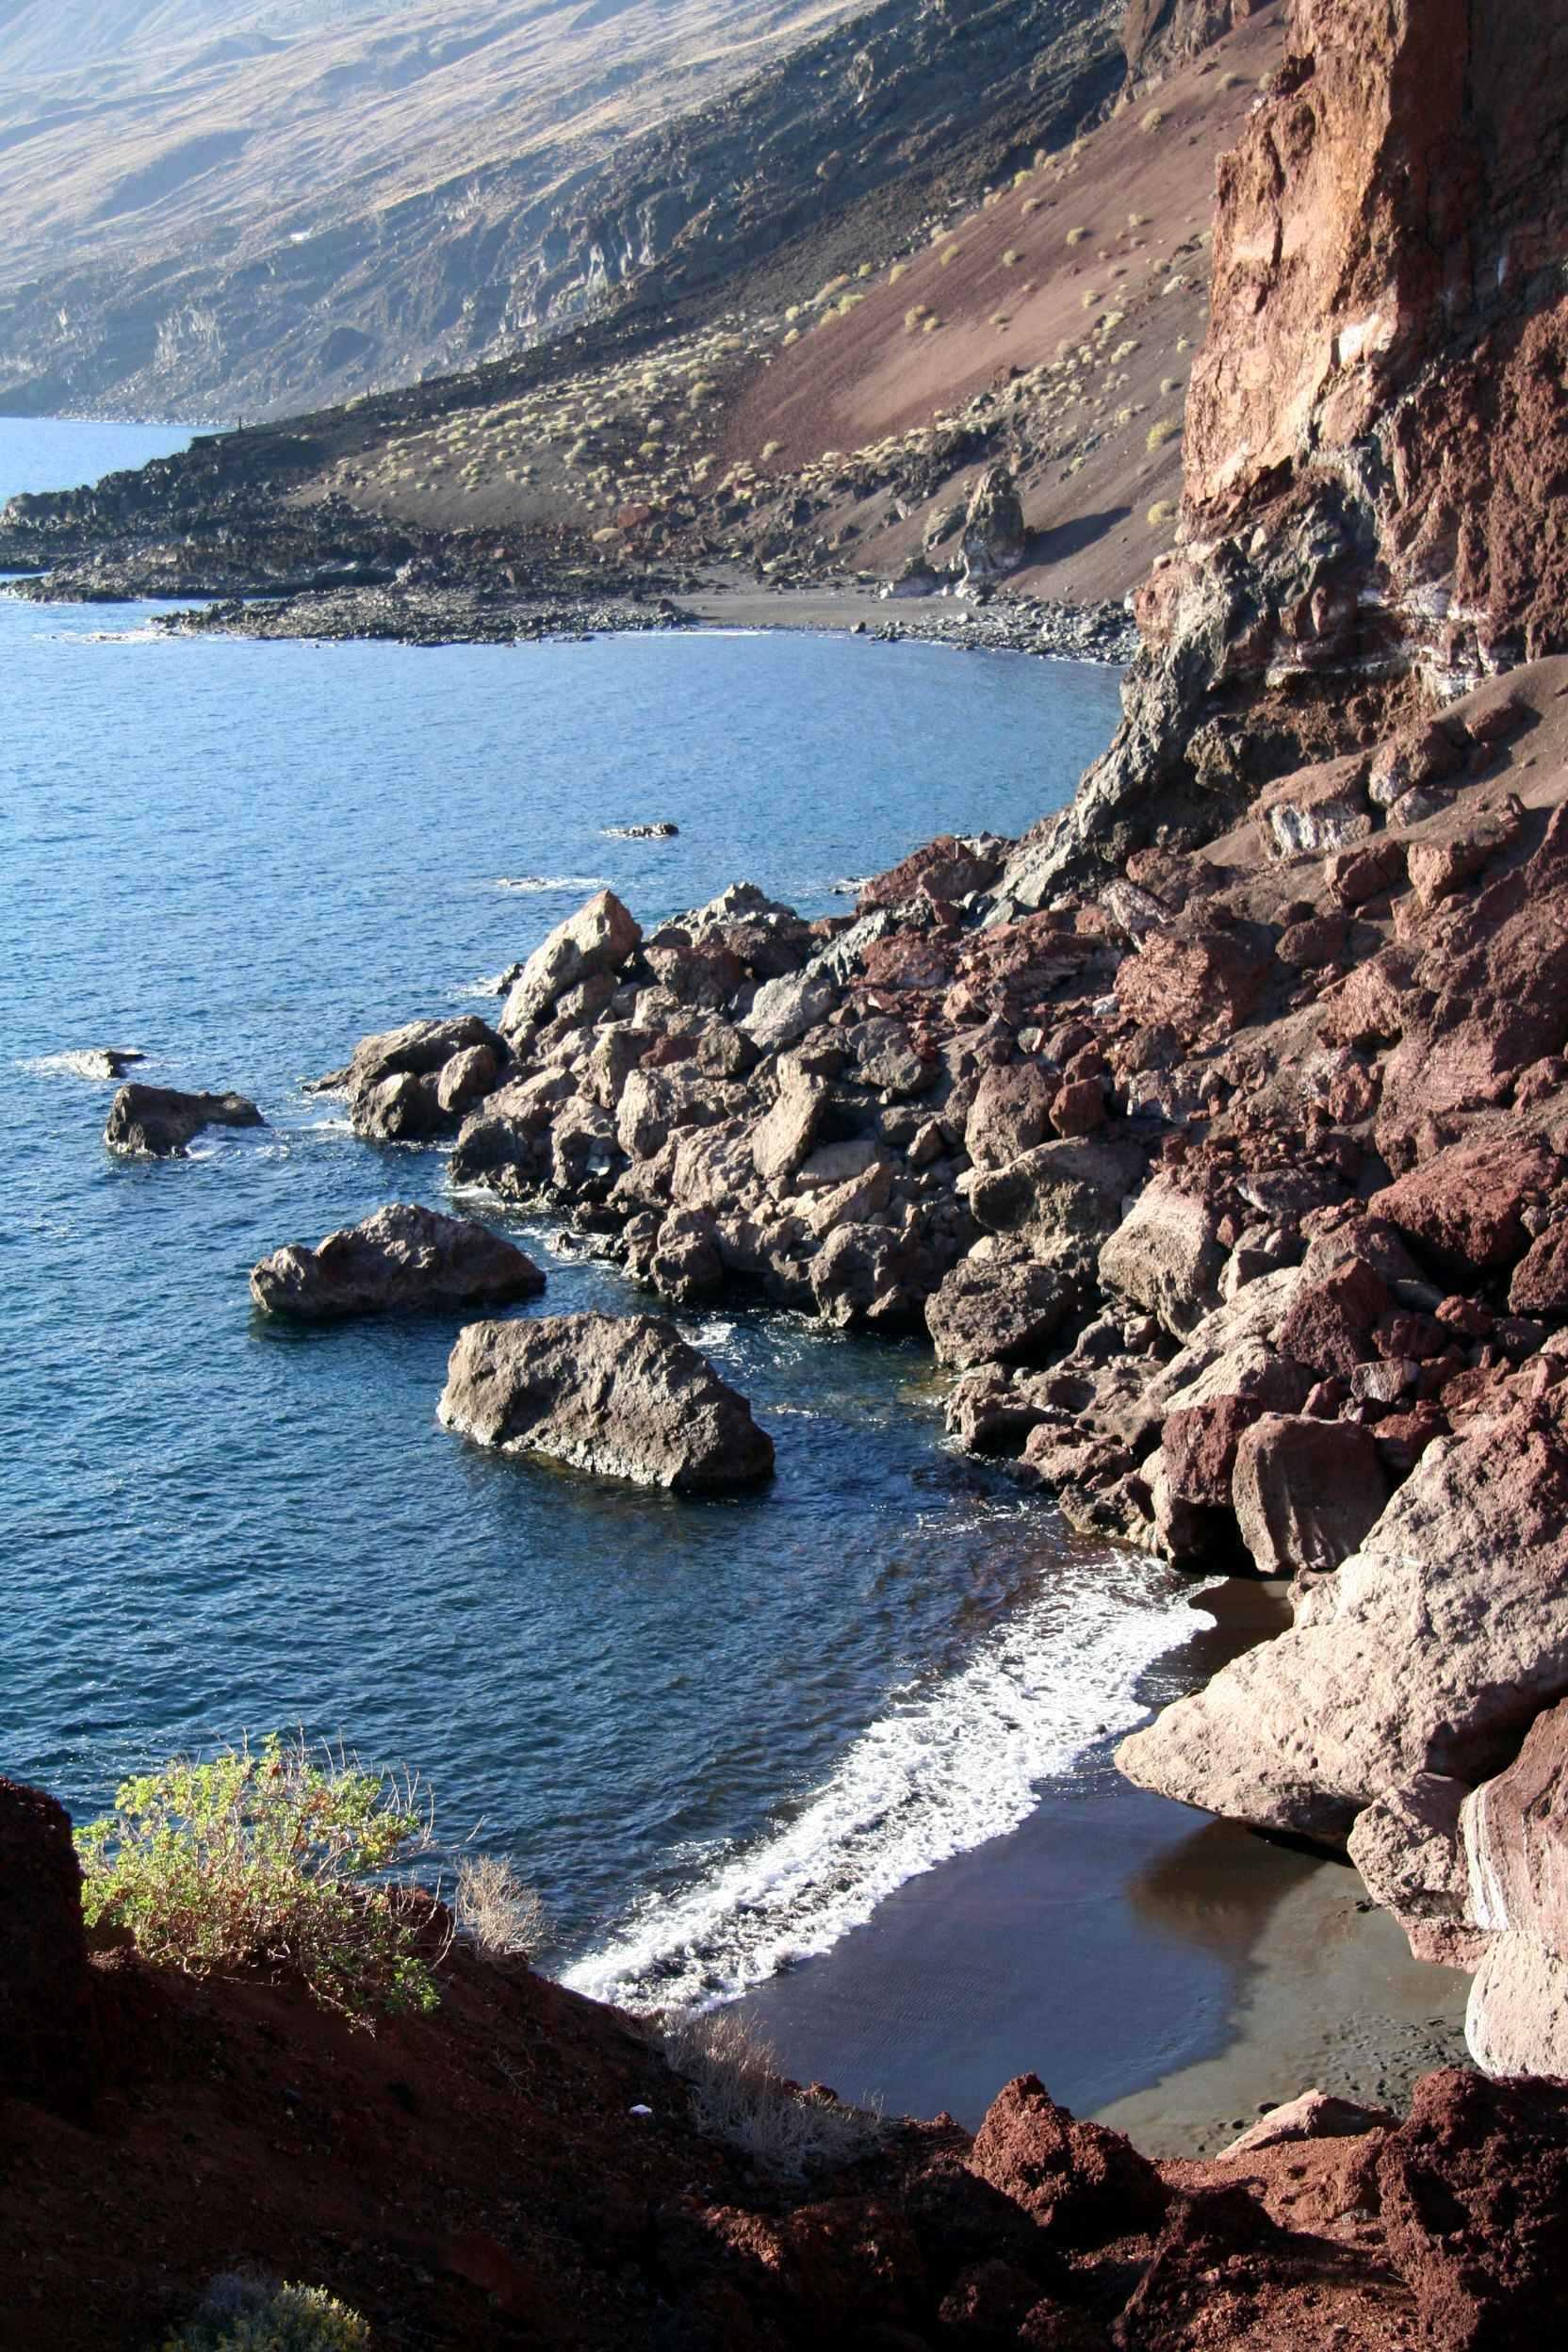 Een stukje van de kustlijn van het eiland waaraan we de vulkanische oorsprong van het eiland goed kunnen zien. Het zwarte strandje rechtsonder en de vele vulkanische rotsblokken.